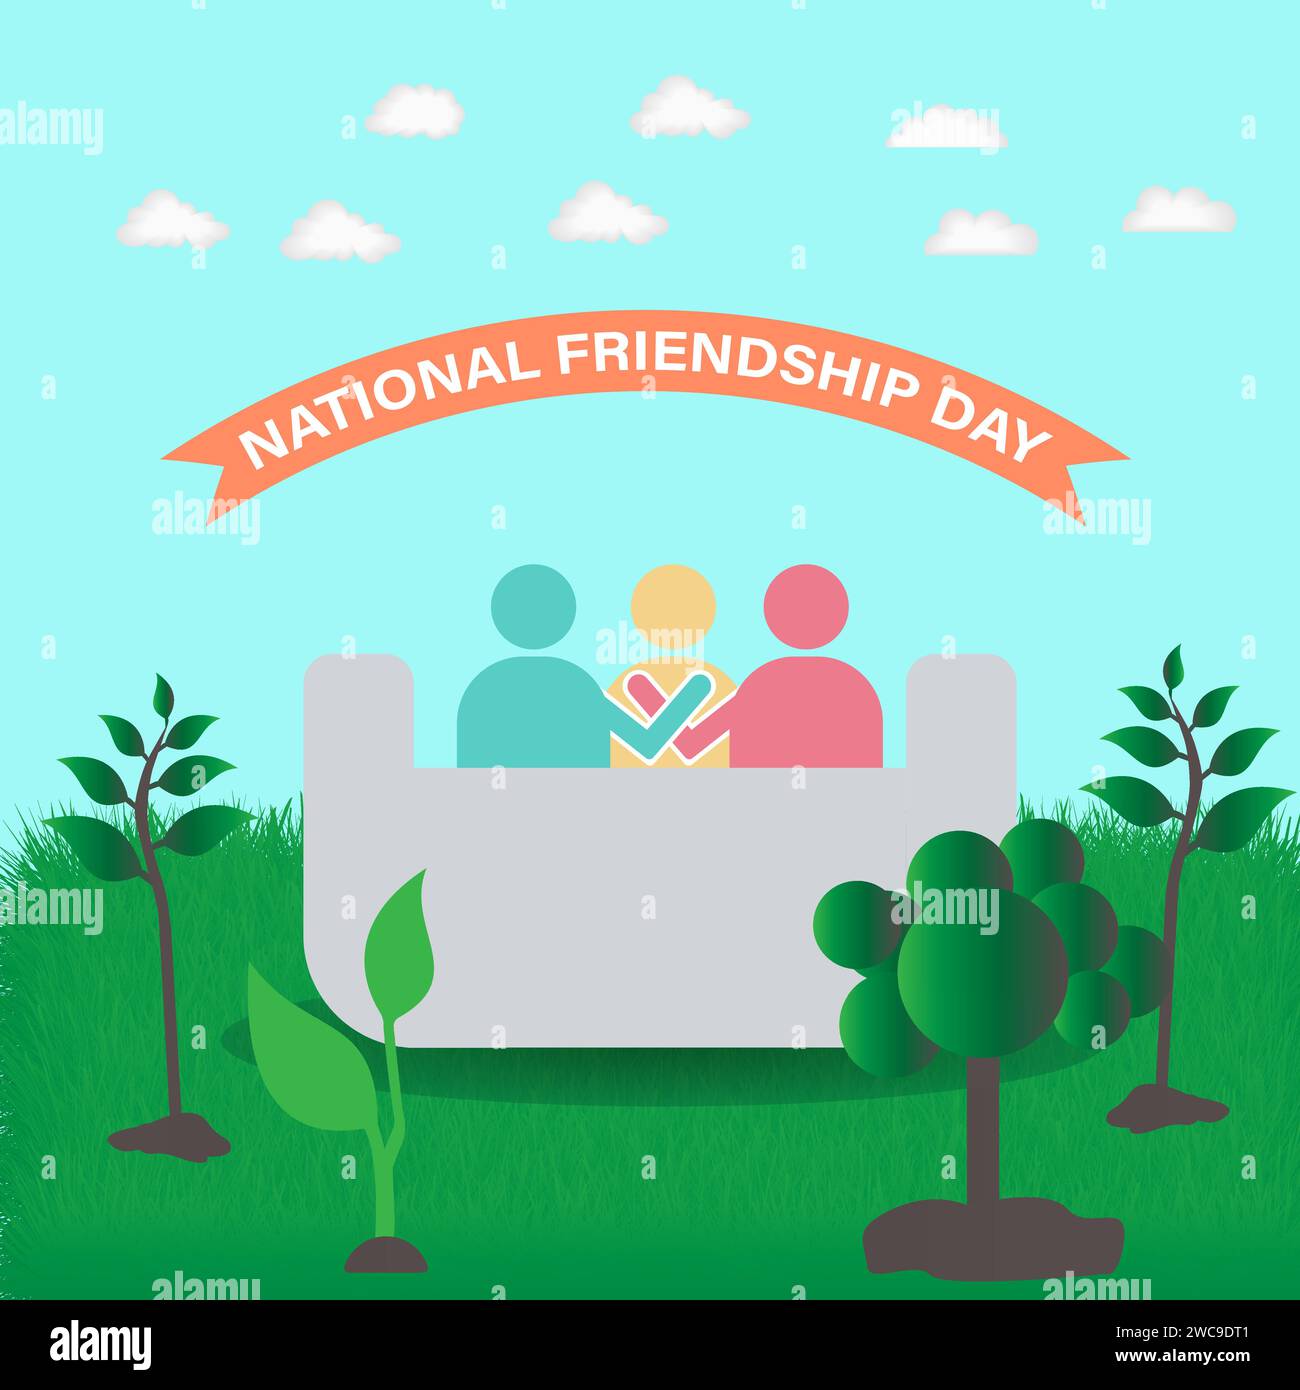 Festa nazionale dell'amicizia celebrata l'11 febbraio. Design di banner vettoriali, volantini, poster e modelli di social media. Illustrazione Vettoriale